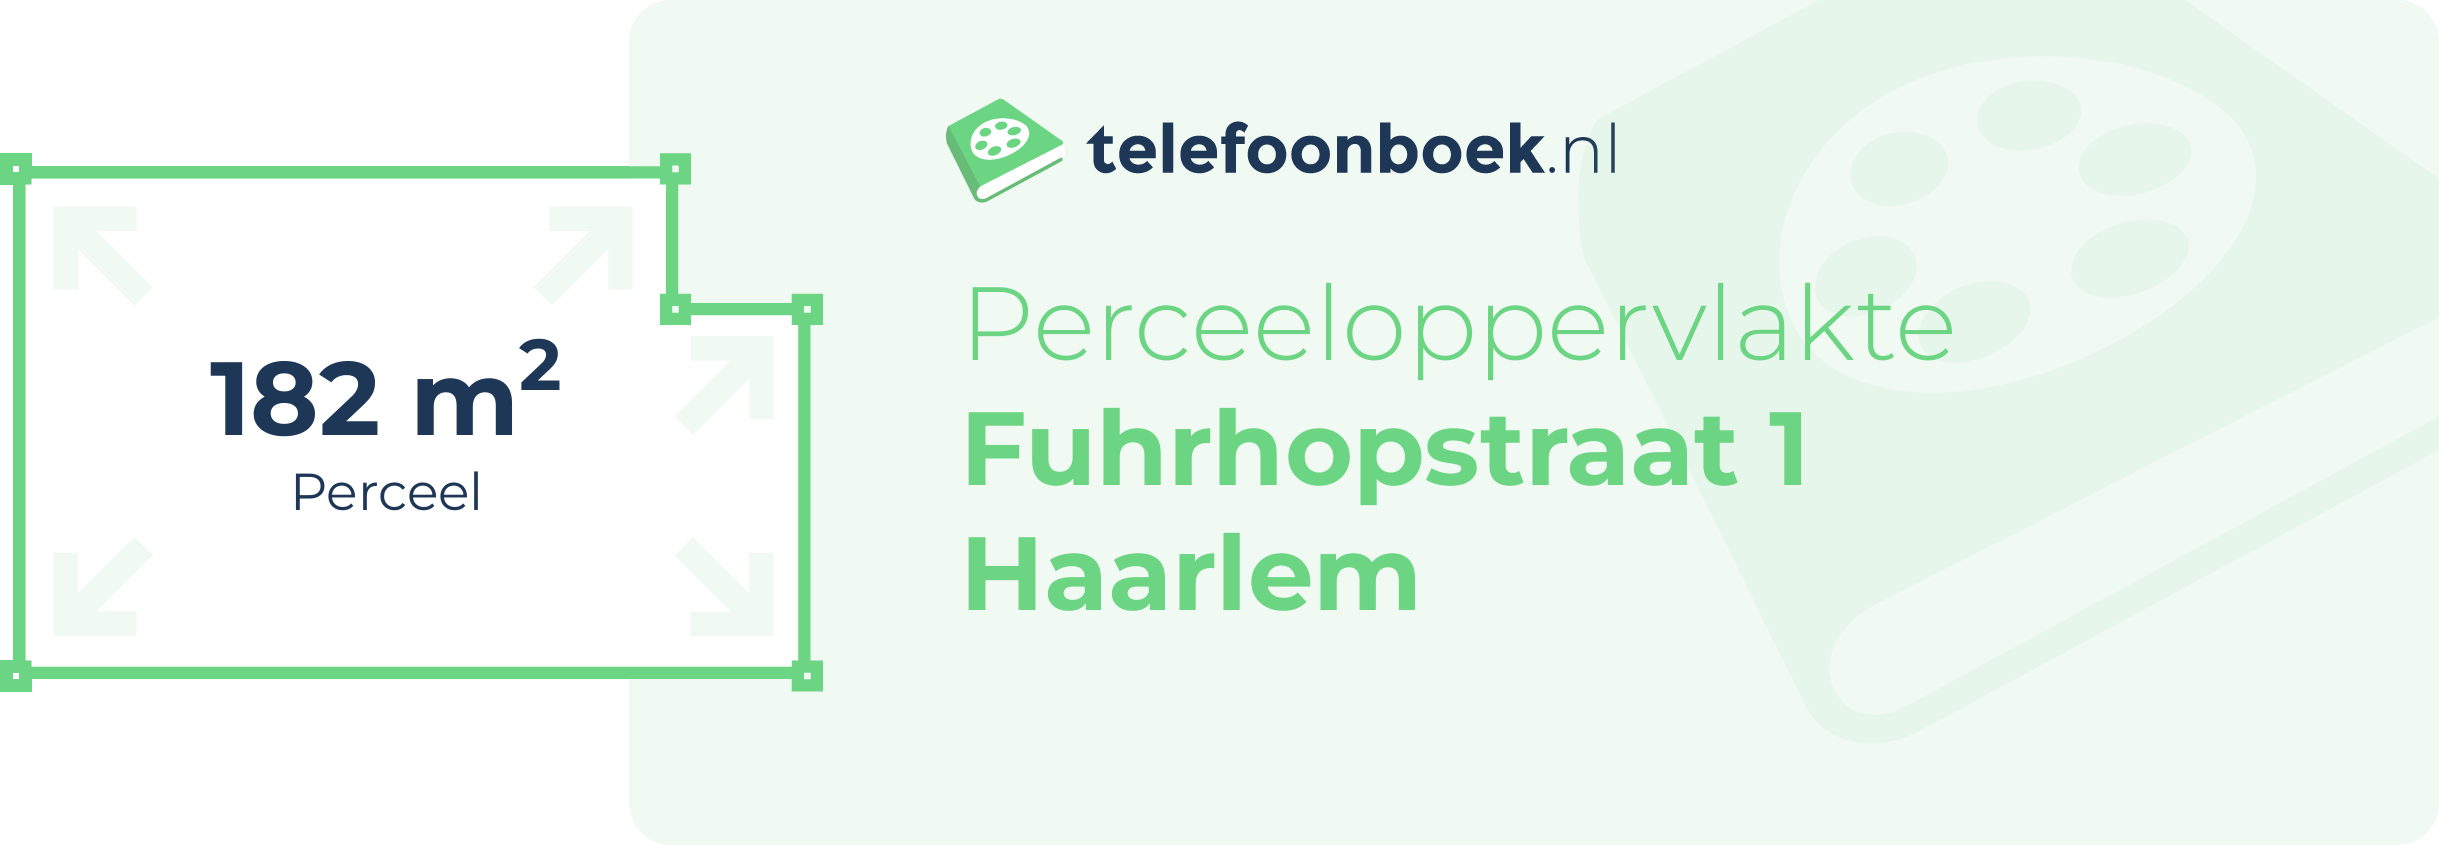 Perceeloppervlakte Fuhrhopstraat 1 Haarlem